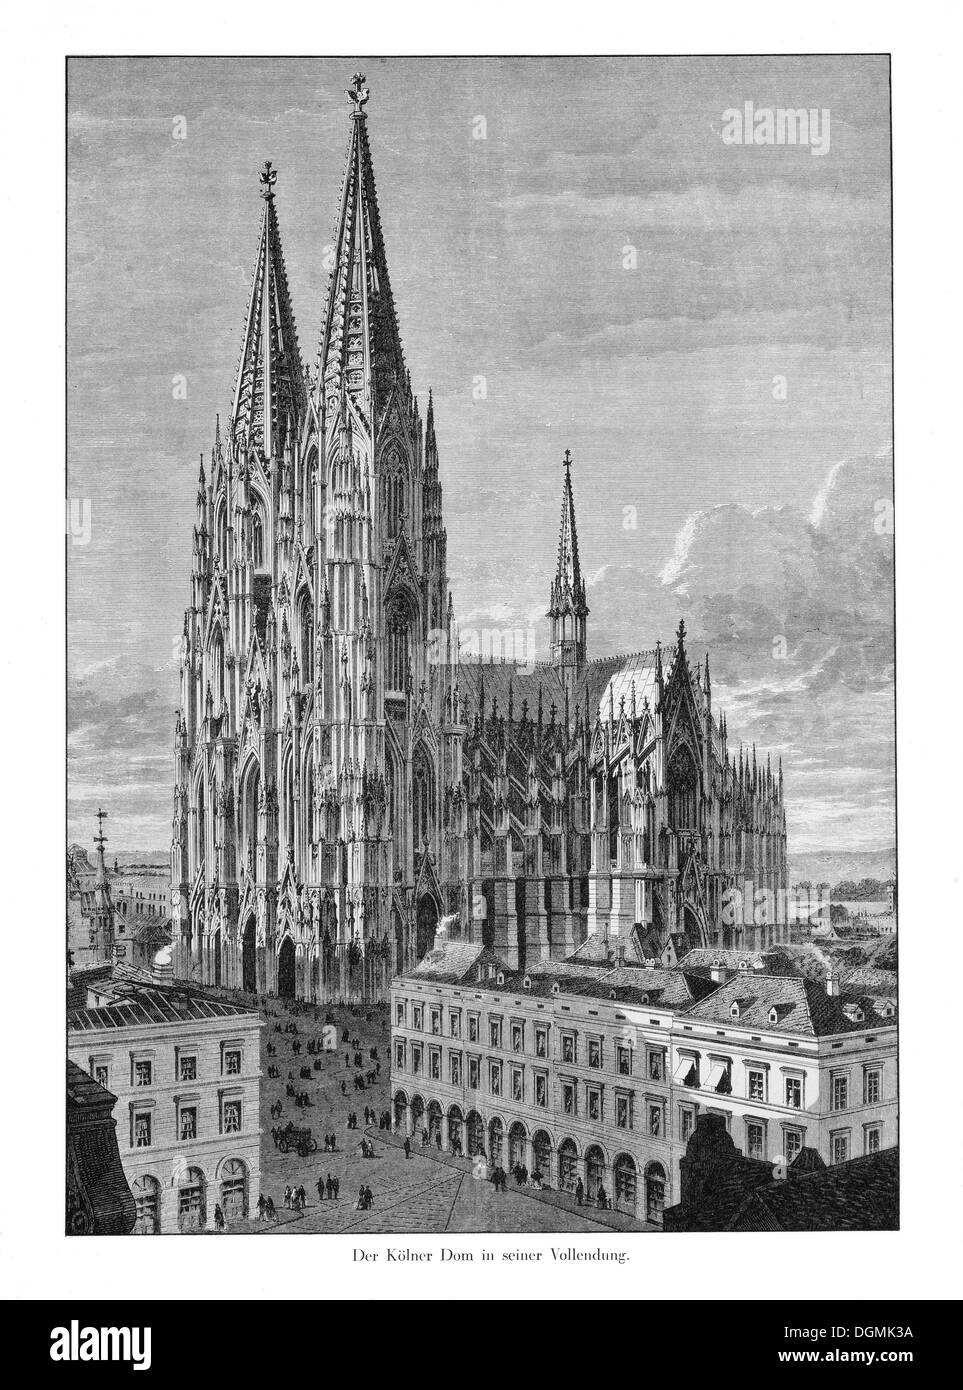 Gravure historique, la cathédrale de Cologne autour de 1880, l'historicisme, gothique, site du patrimoine culturel mondial de l'UNESCO Banque D'Images